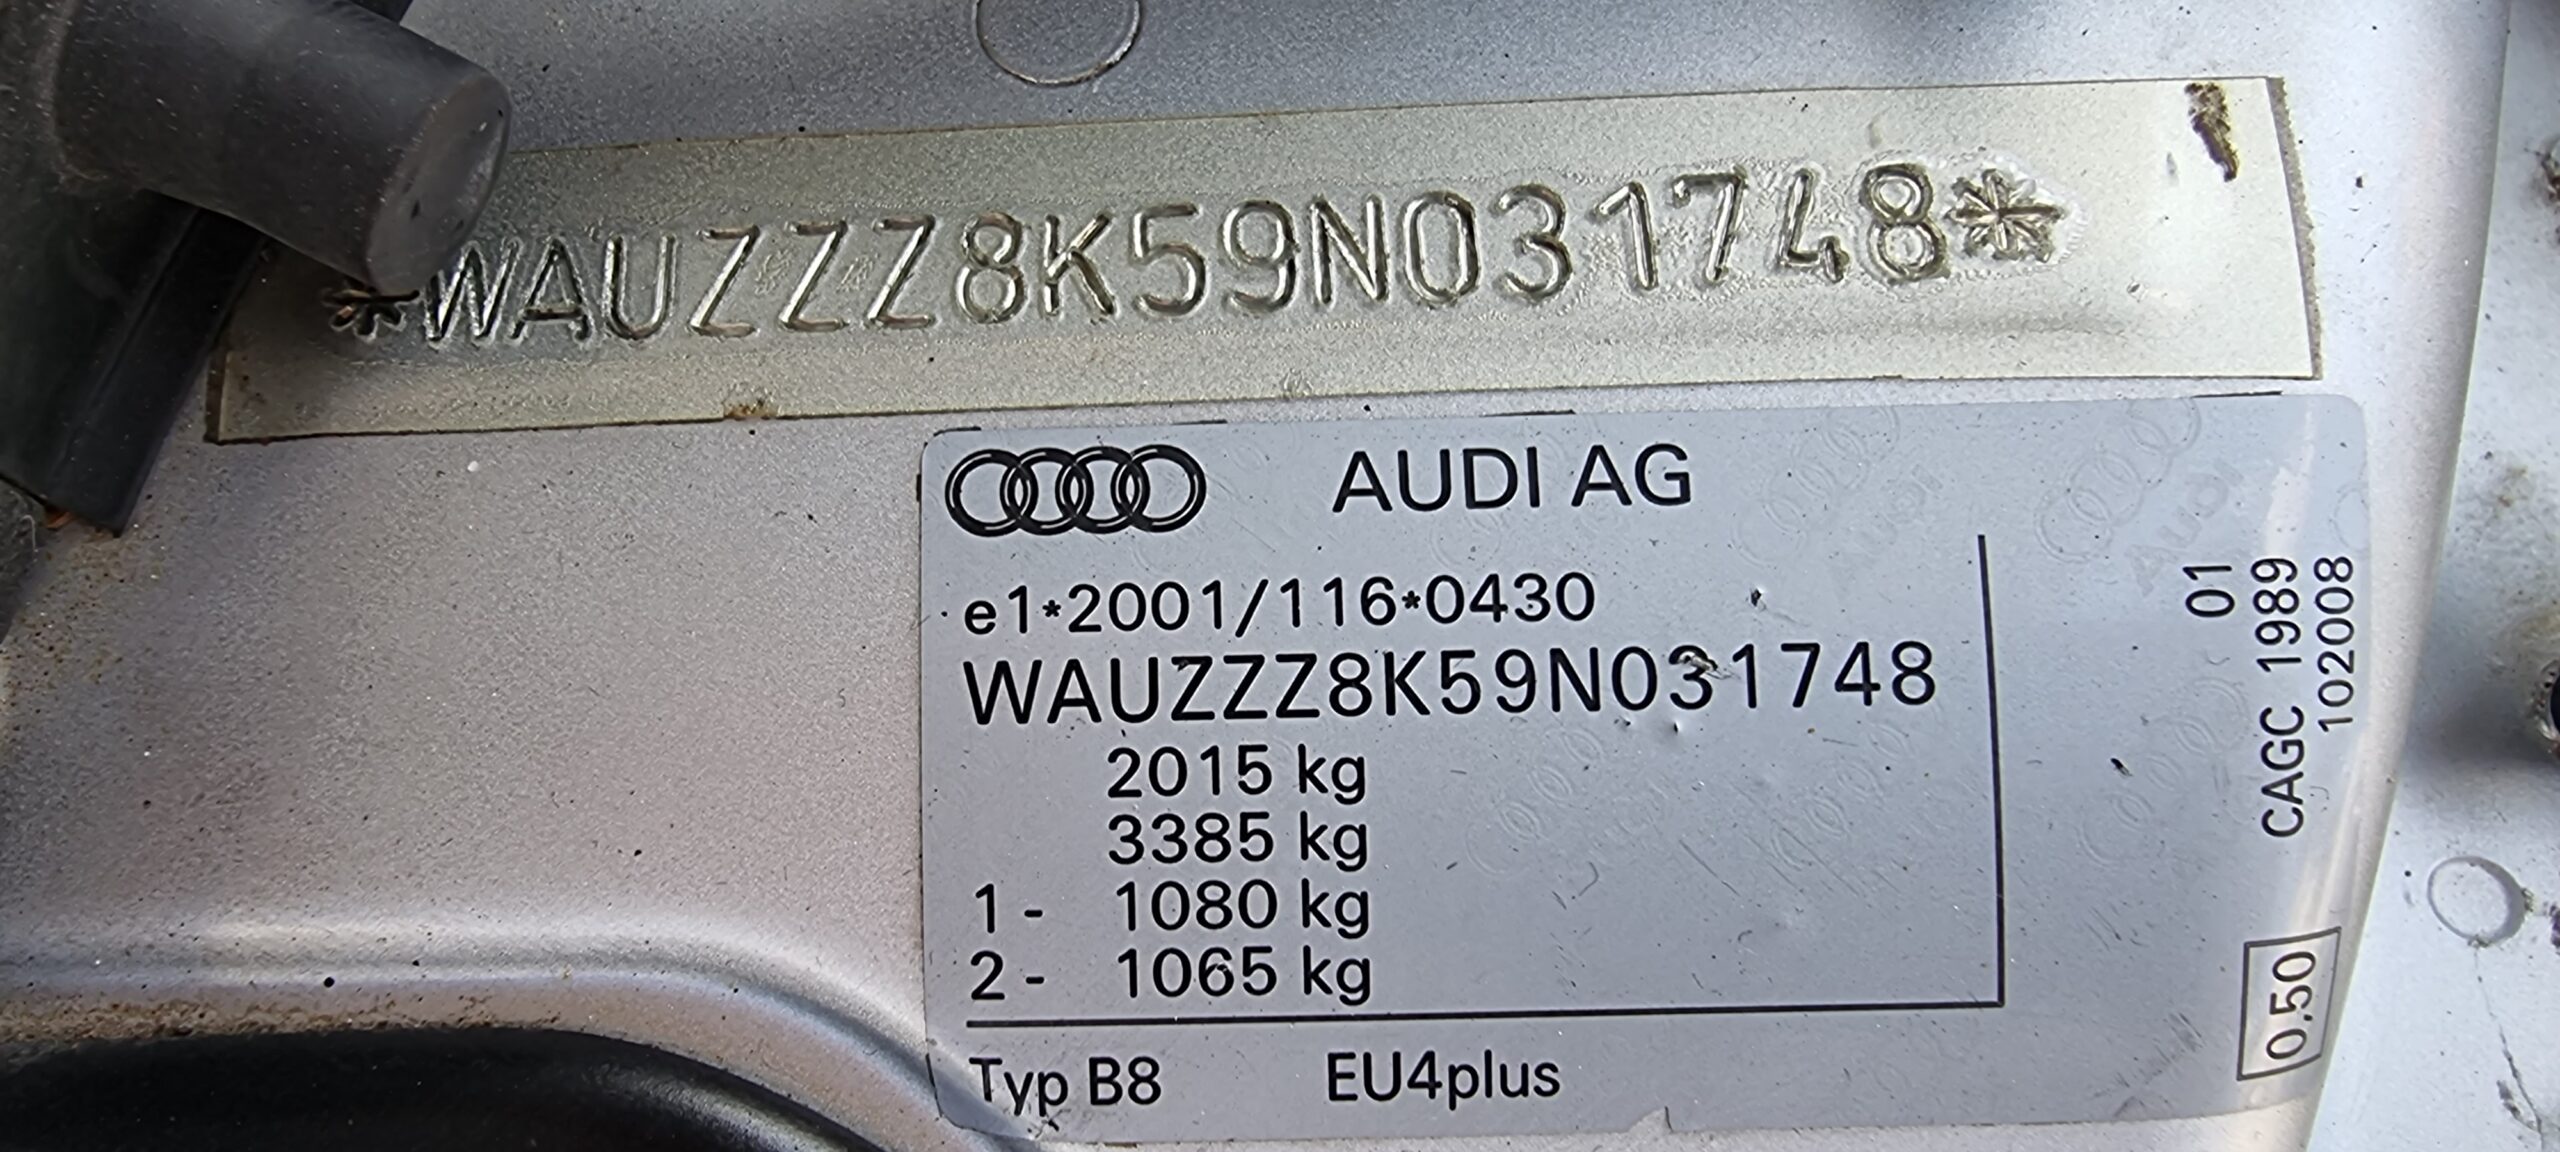 AUDI A4, 2.0 TDI, 143 CP, AN 2009